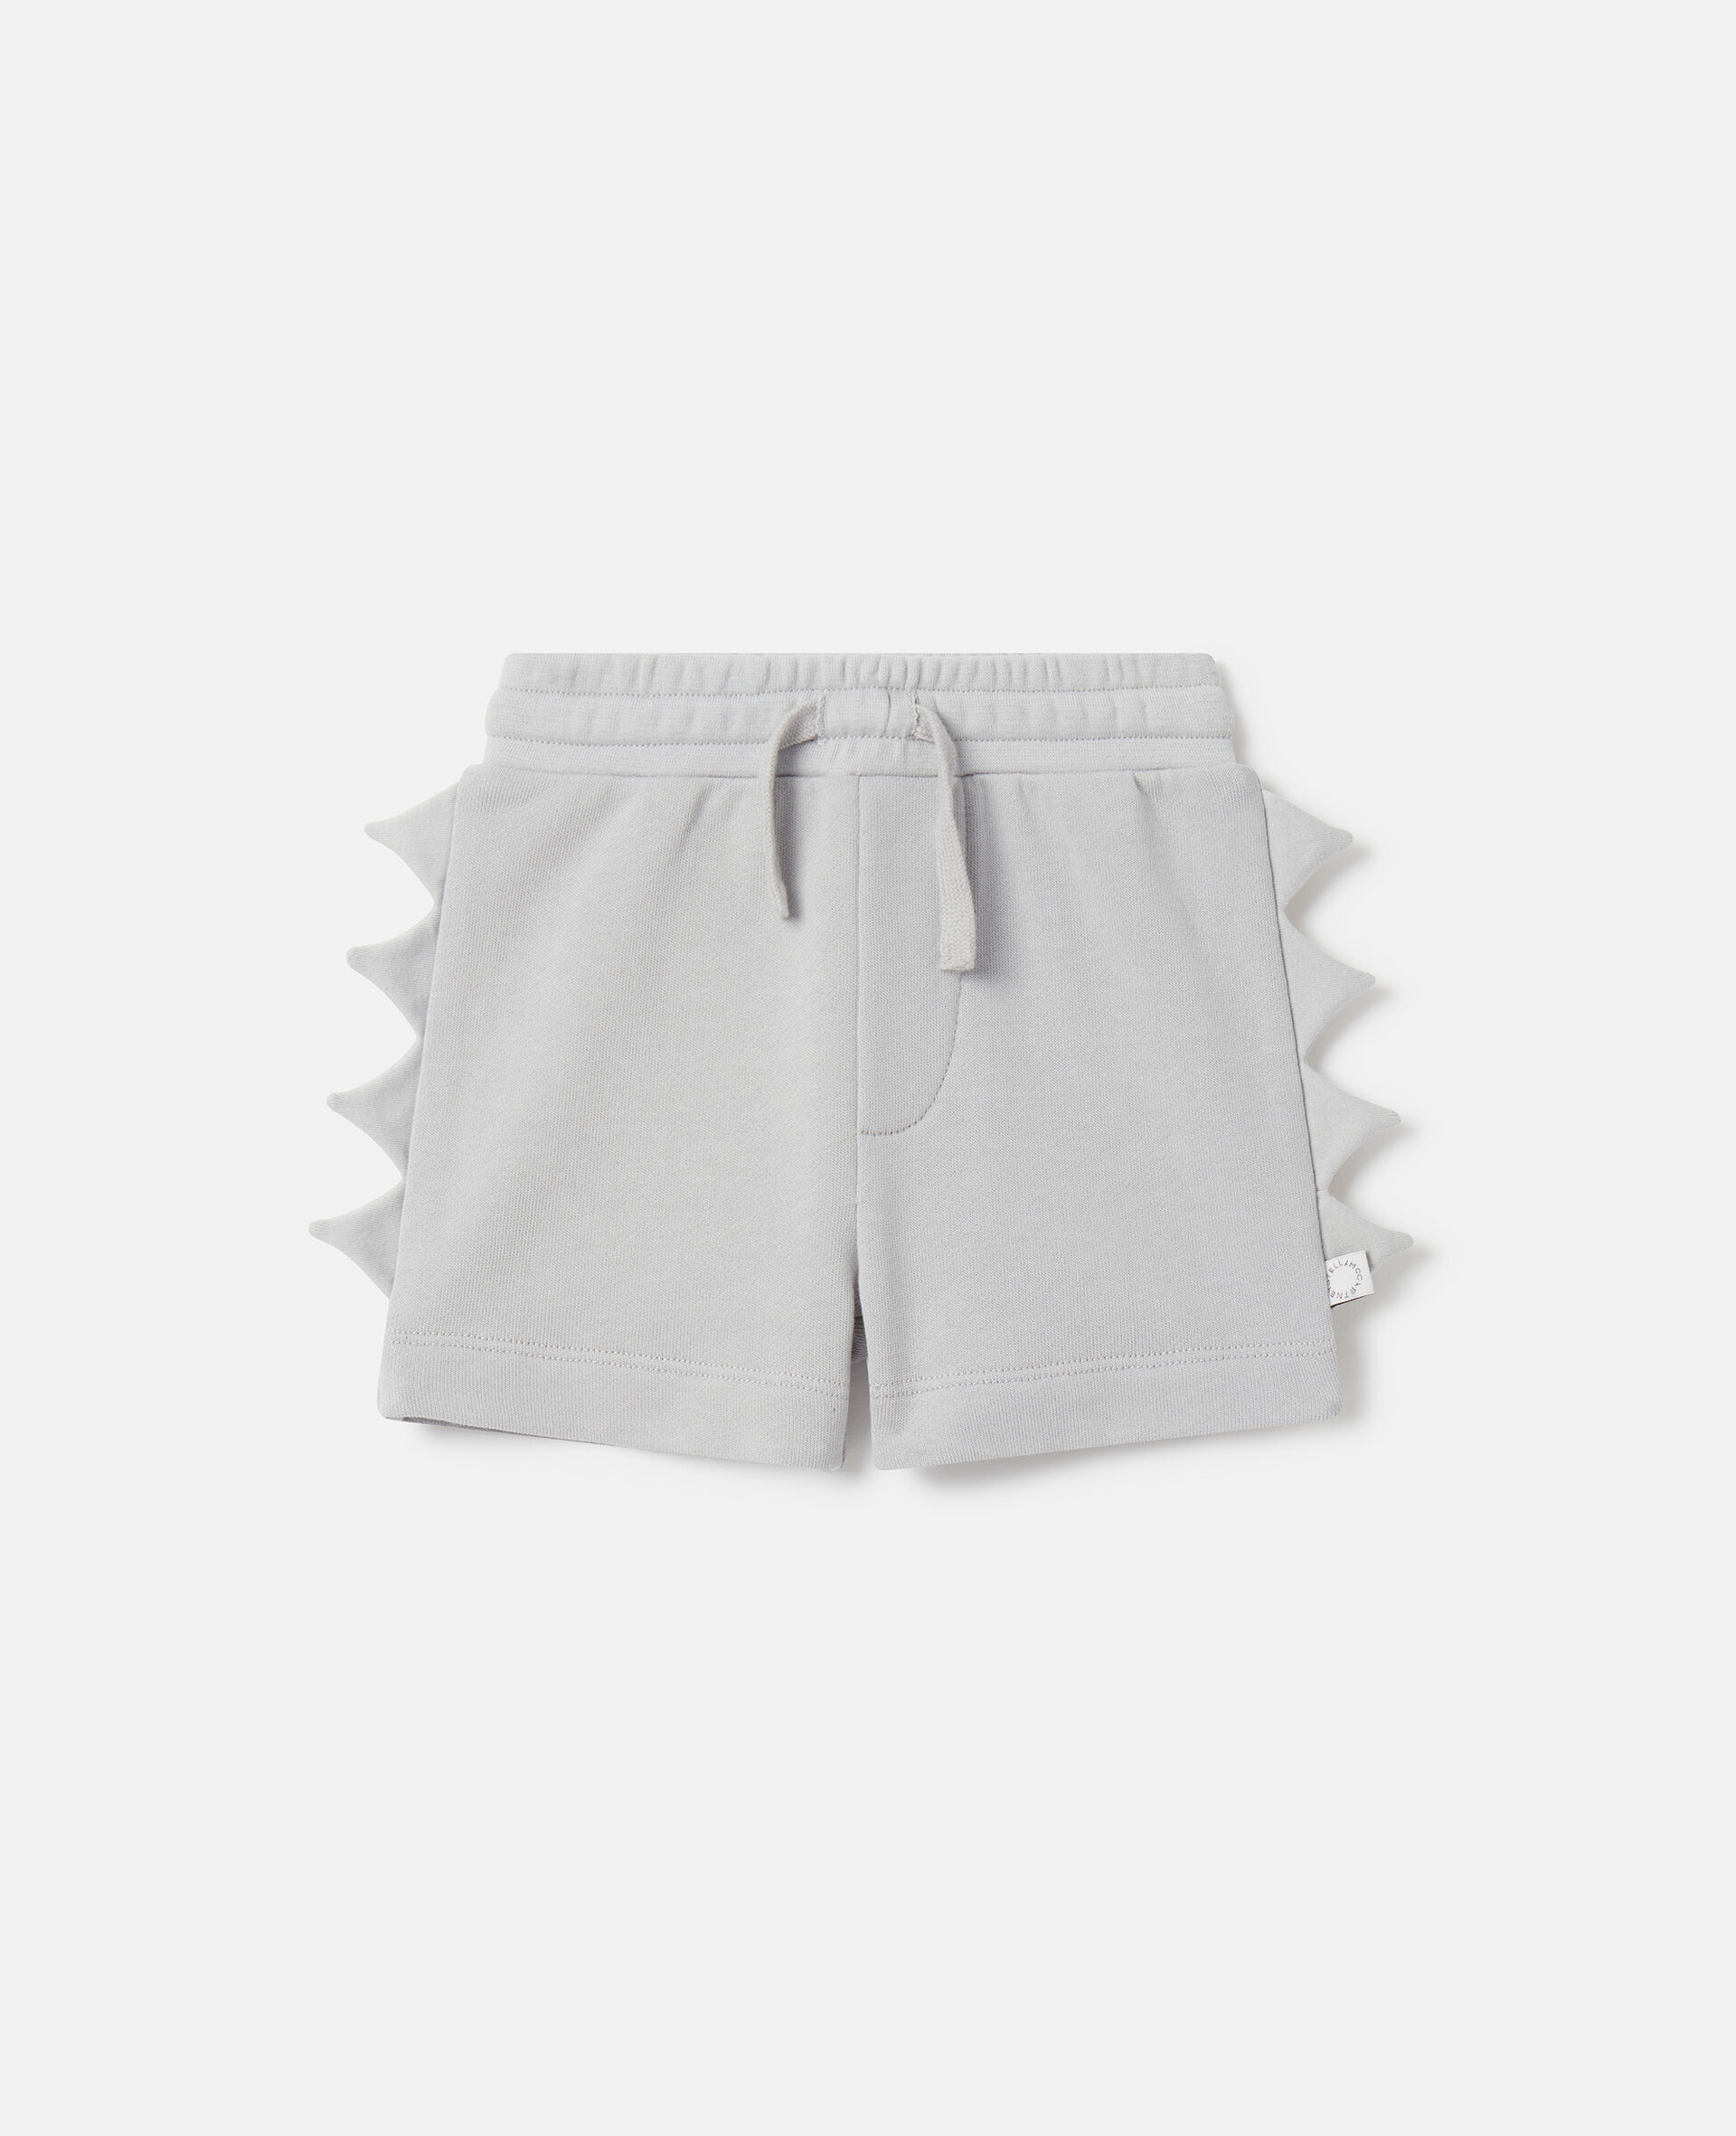 Shark Fin Spike Shorts-灰色-medium